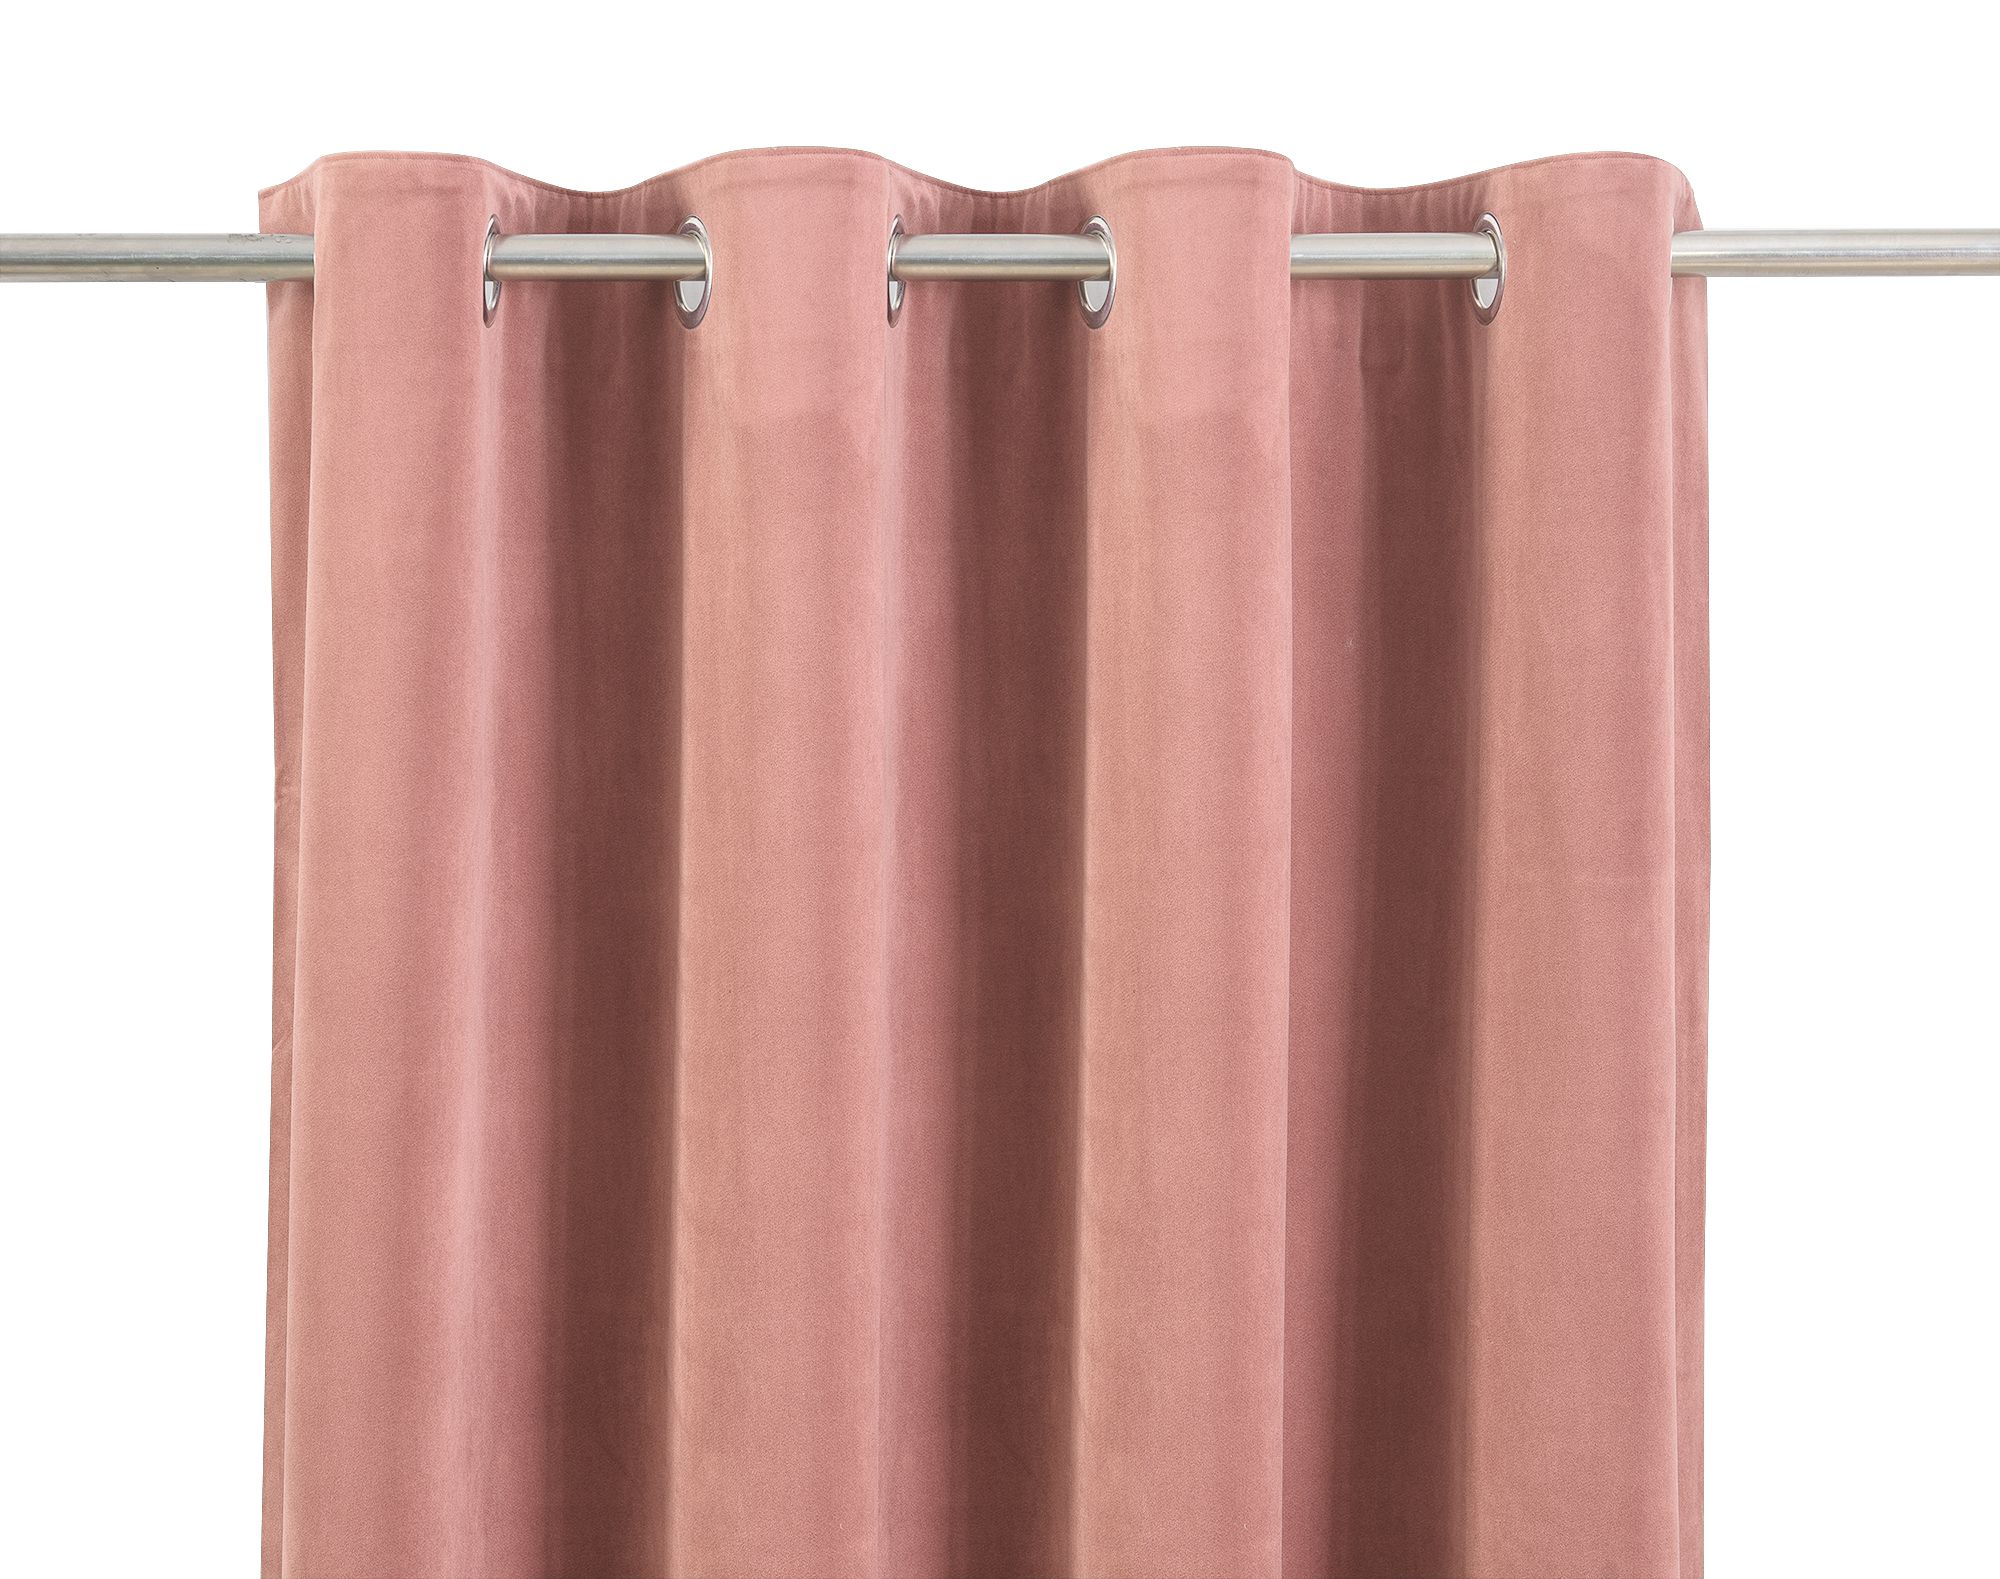 Valgreta Pink Velvet Lined Eyelet Curtain (W)117cm (L)137cm, Pair